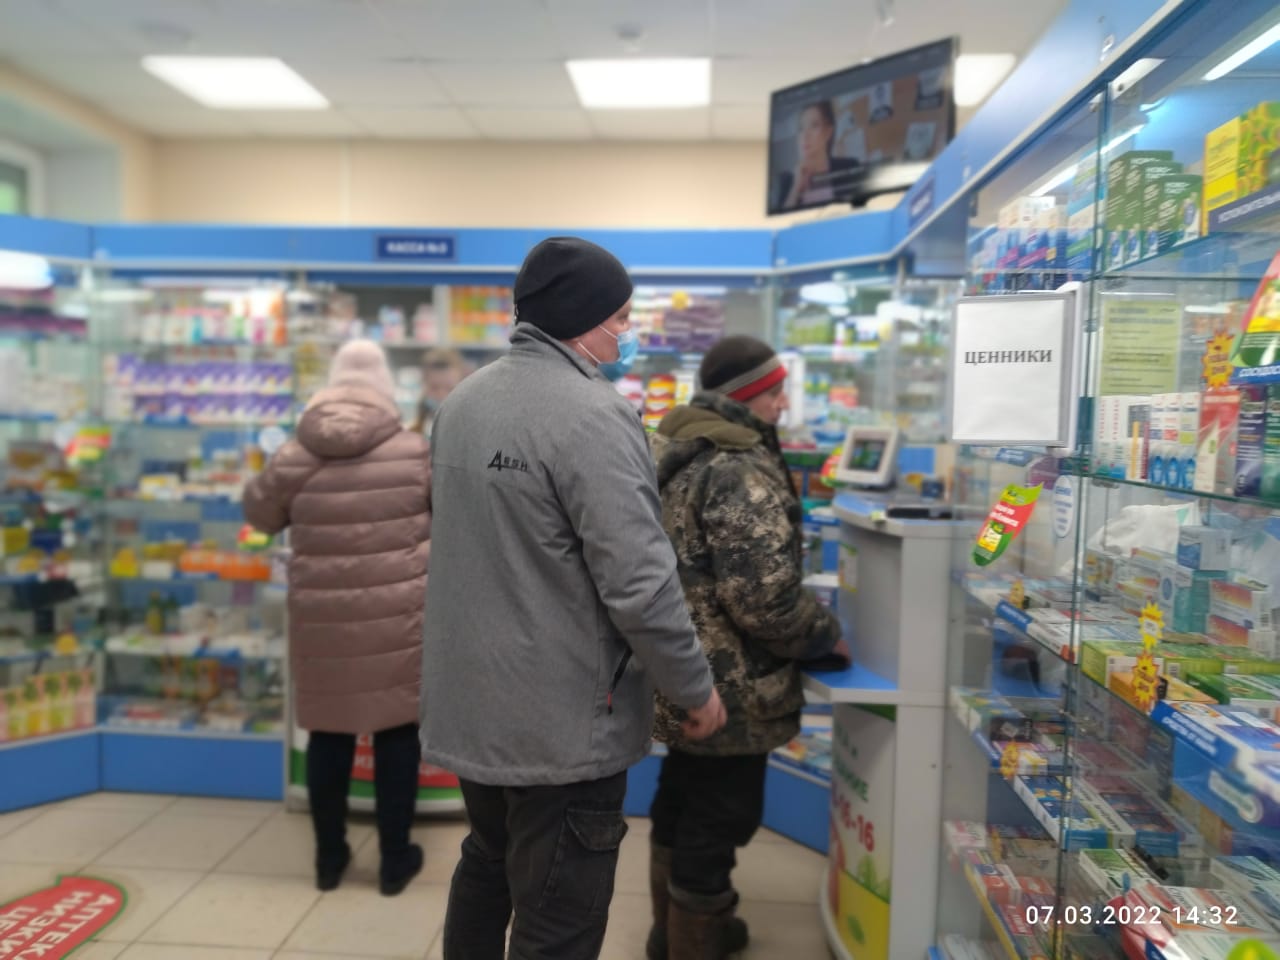 7 марта днем мы зашли в несколько аптек в Нижней Туре. Очередей мы не увидели. Провизоры отмечают, что за последние несколько дней цены на определенные лекарства подросли. Но резкого скачка нет. Снимок сделан 7 марта в 14:32